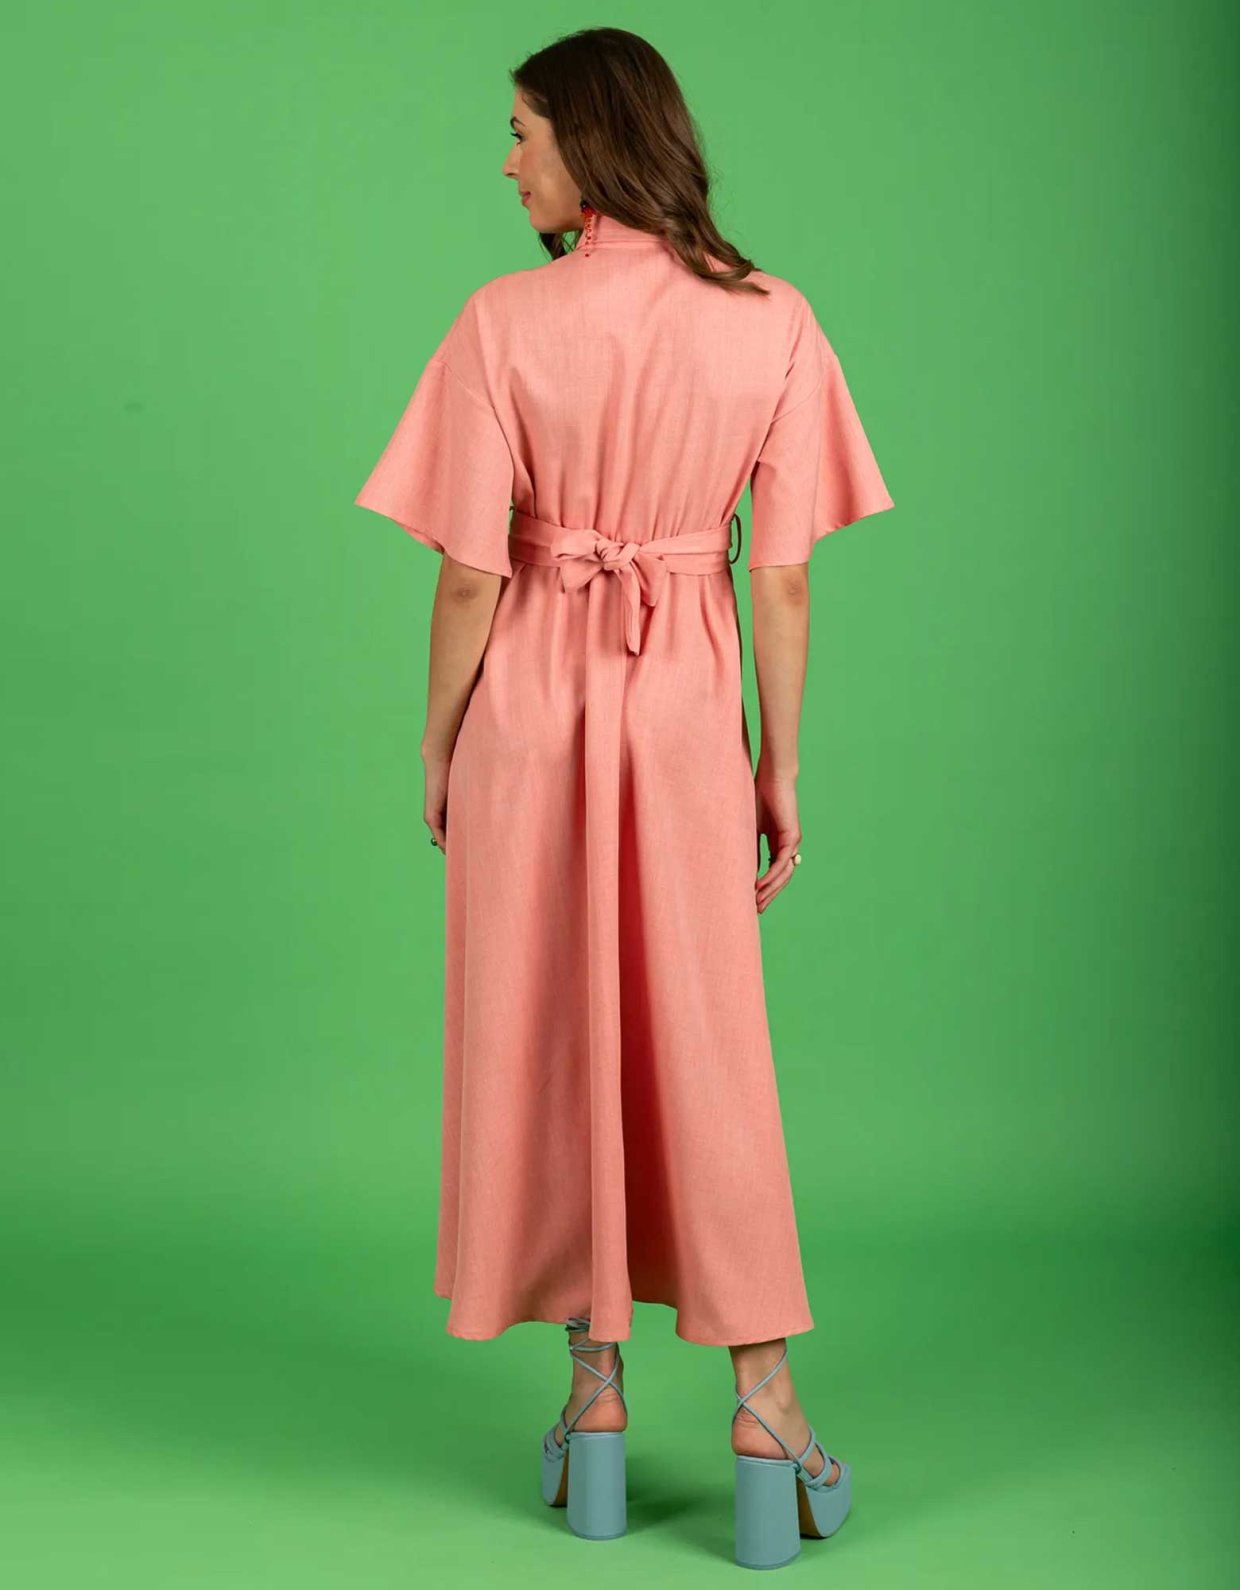 Chaton Corinna dress pink